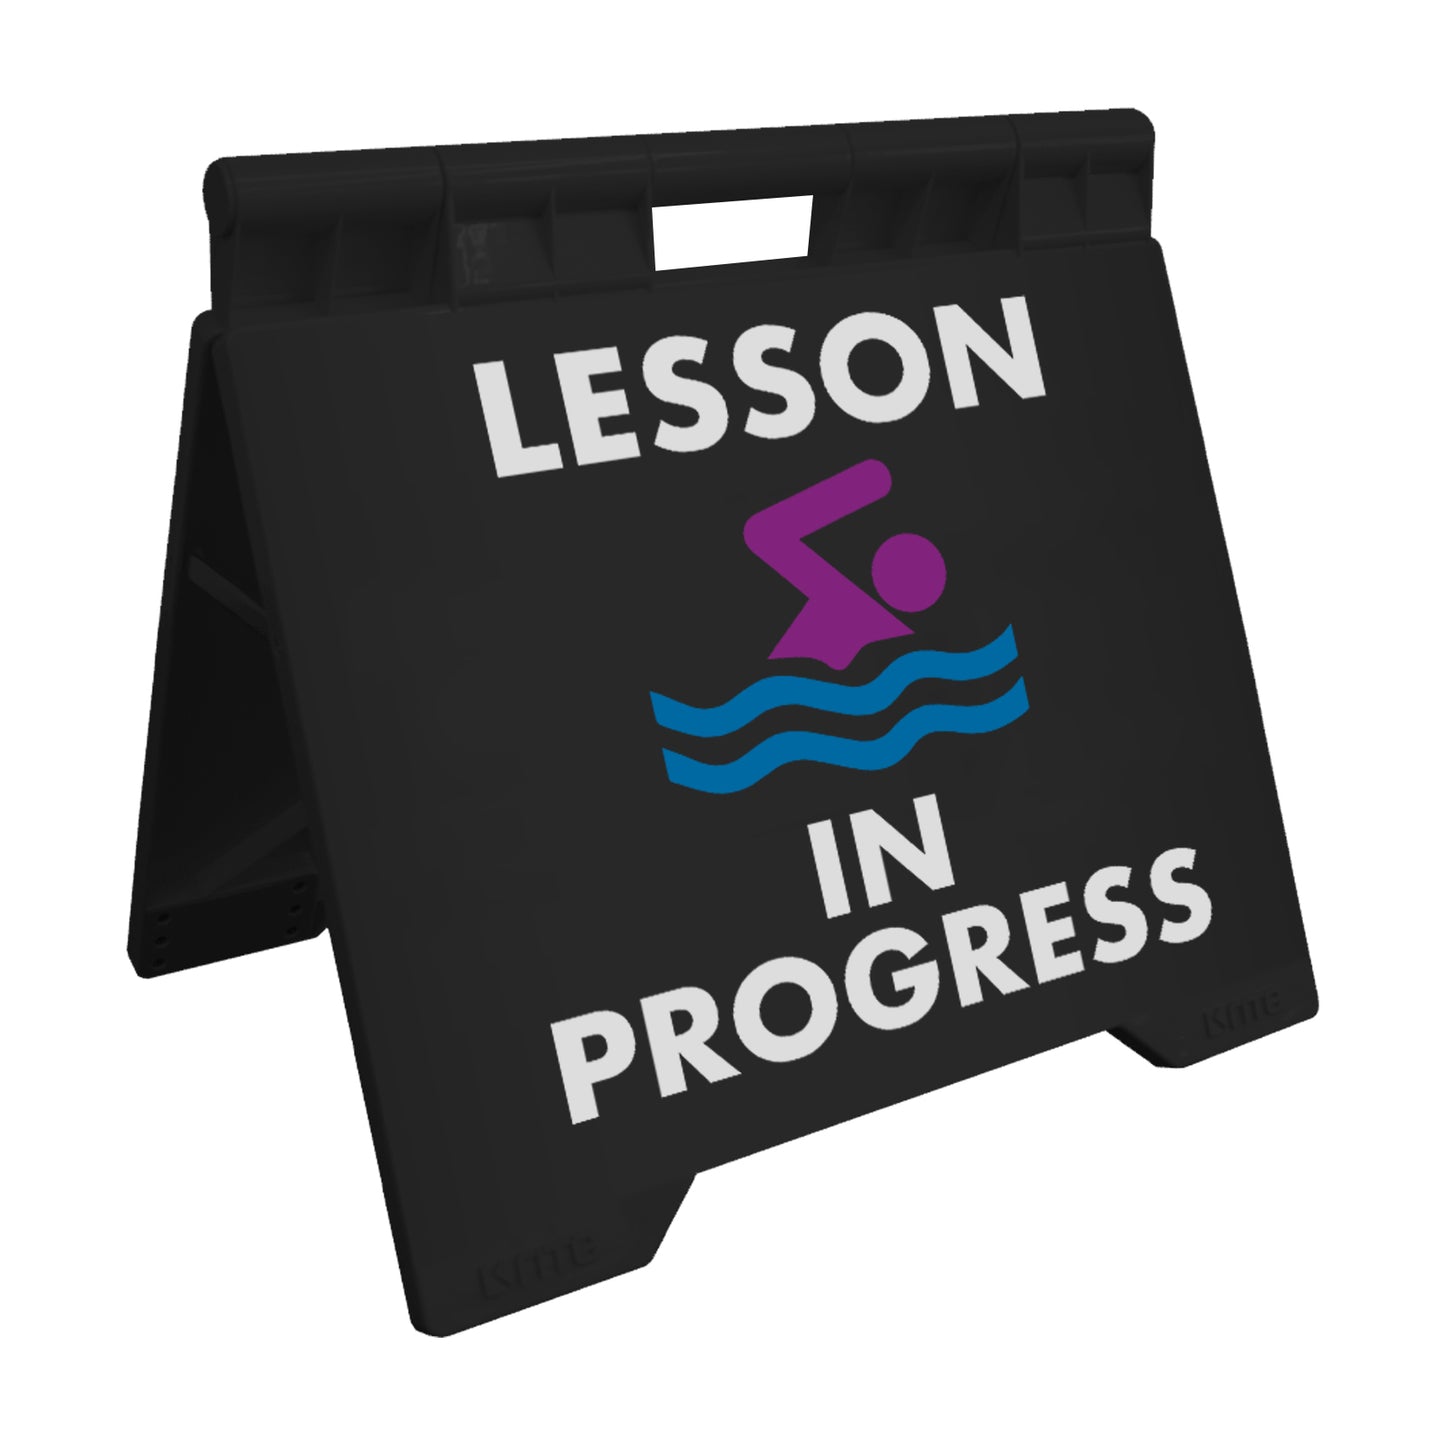 Lesson In Progress - Evarite A-Frame Sign